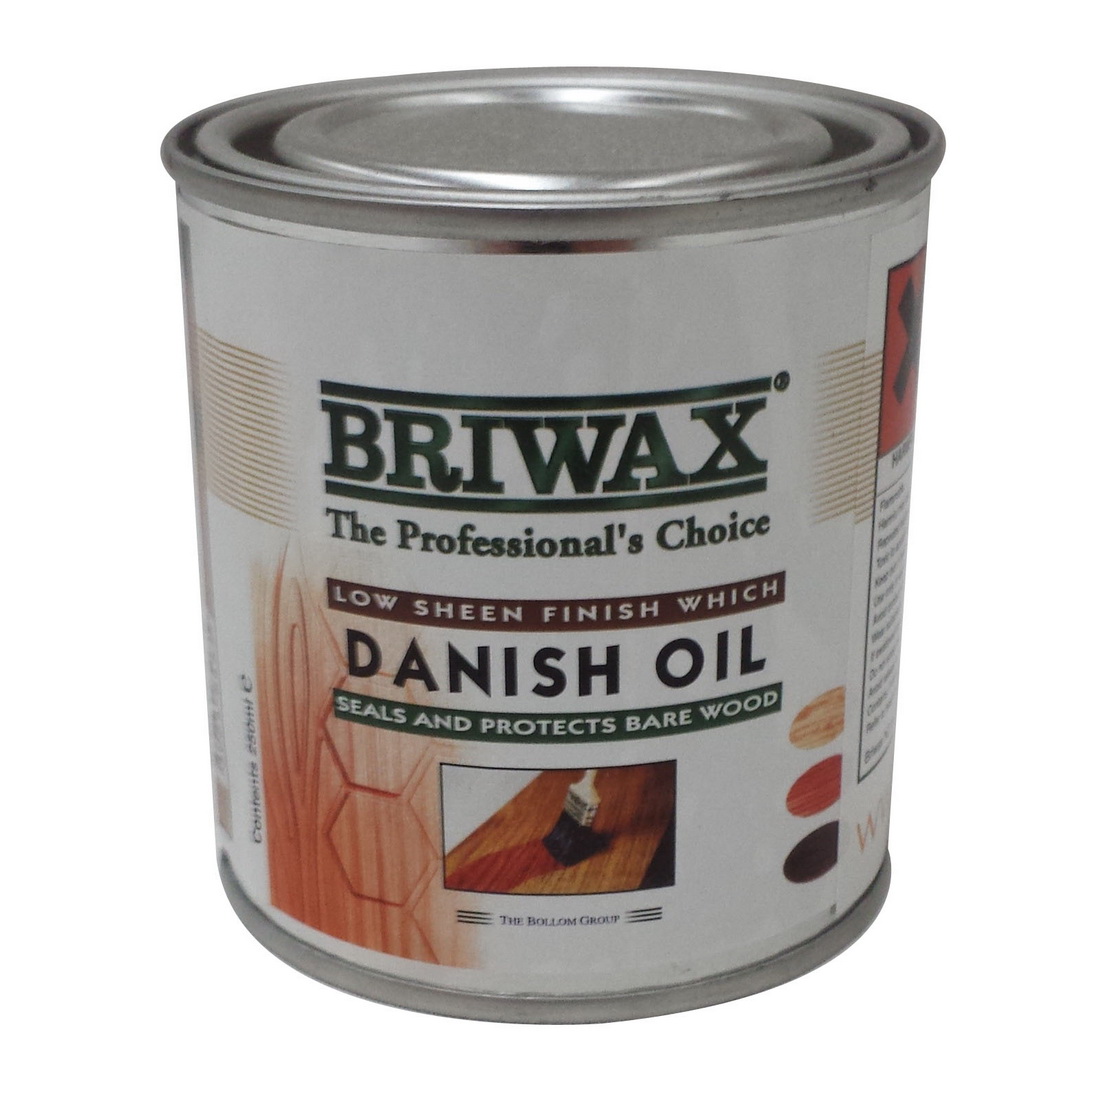 Briwax Danish Oil